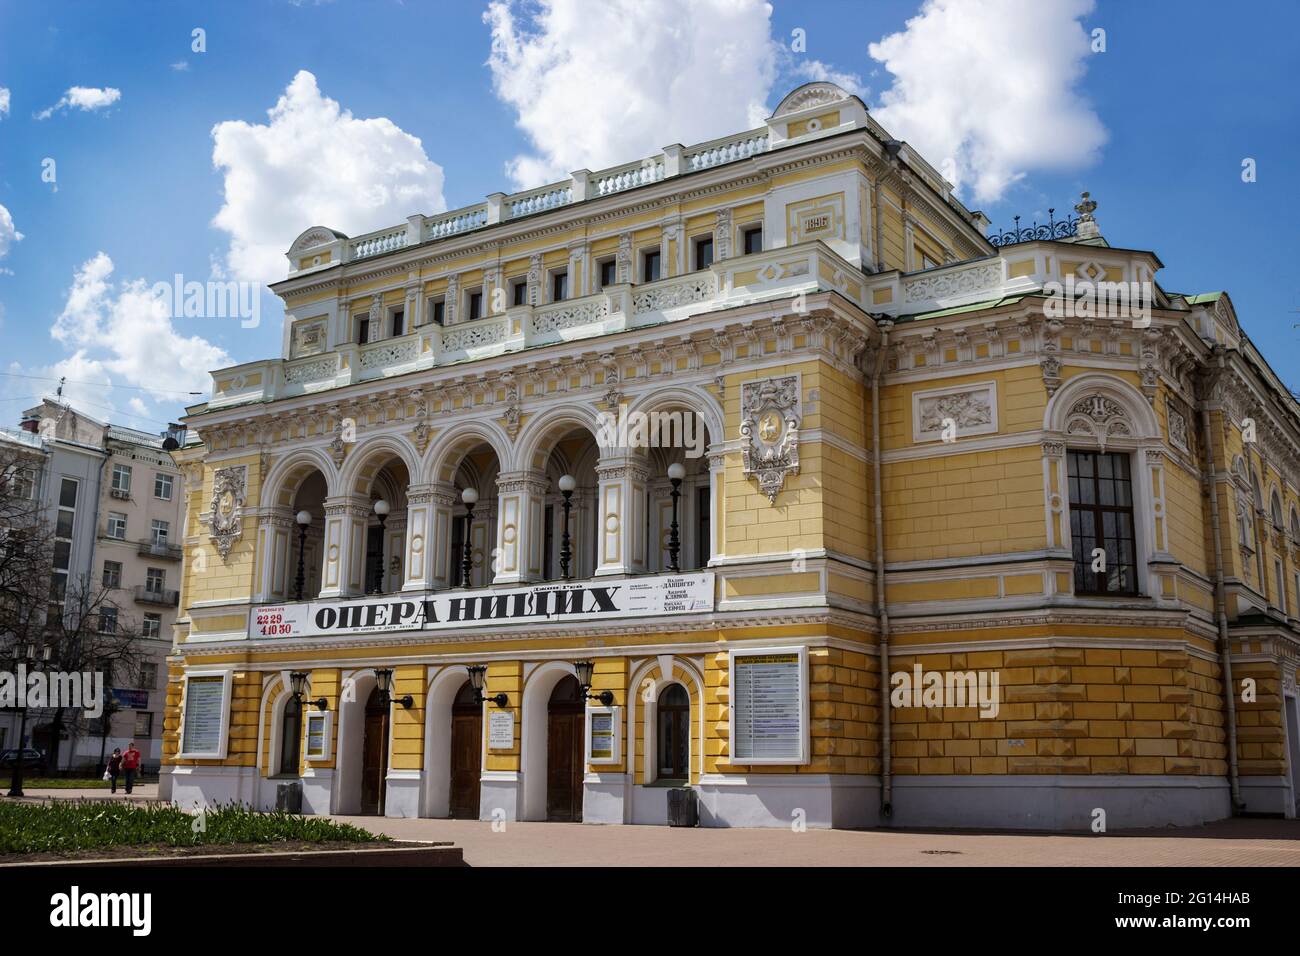 RUSSIA, NIZHNY NOVGOROD - 01 MAGGIO 2014: Teatro drammatico Nizhny Novgorod - uno dei più antichi teatri russi, è stato fondato nel 1798 Foto Stock